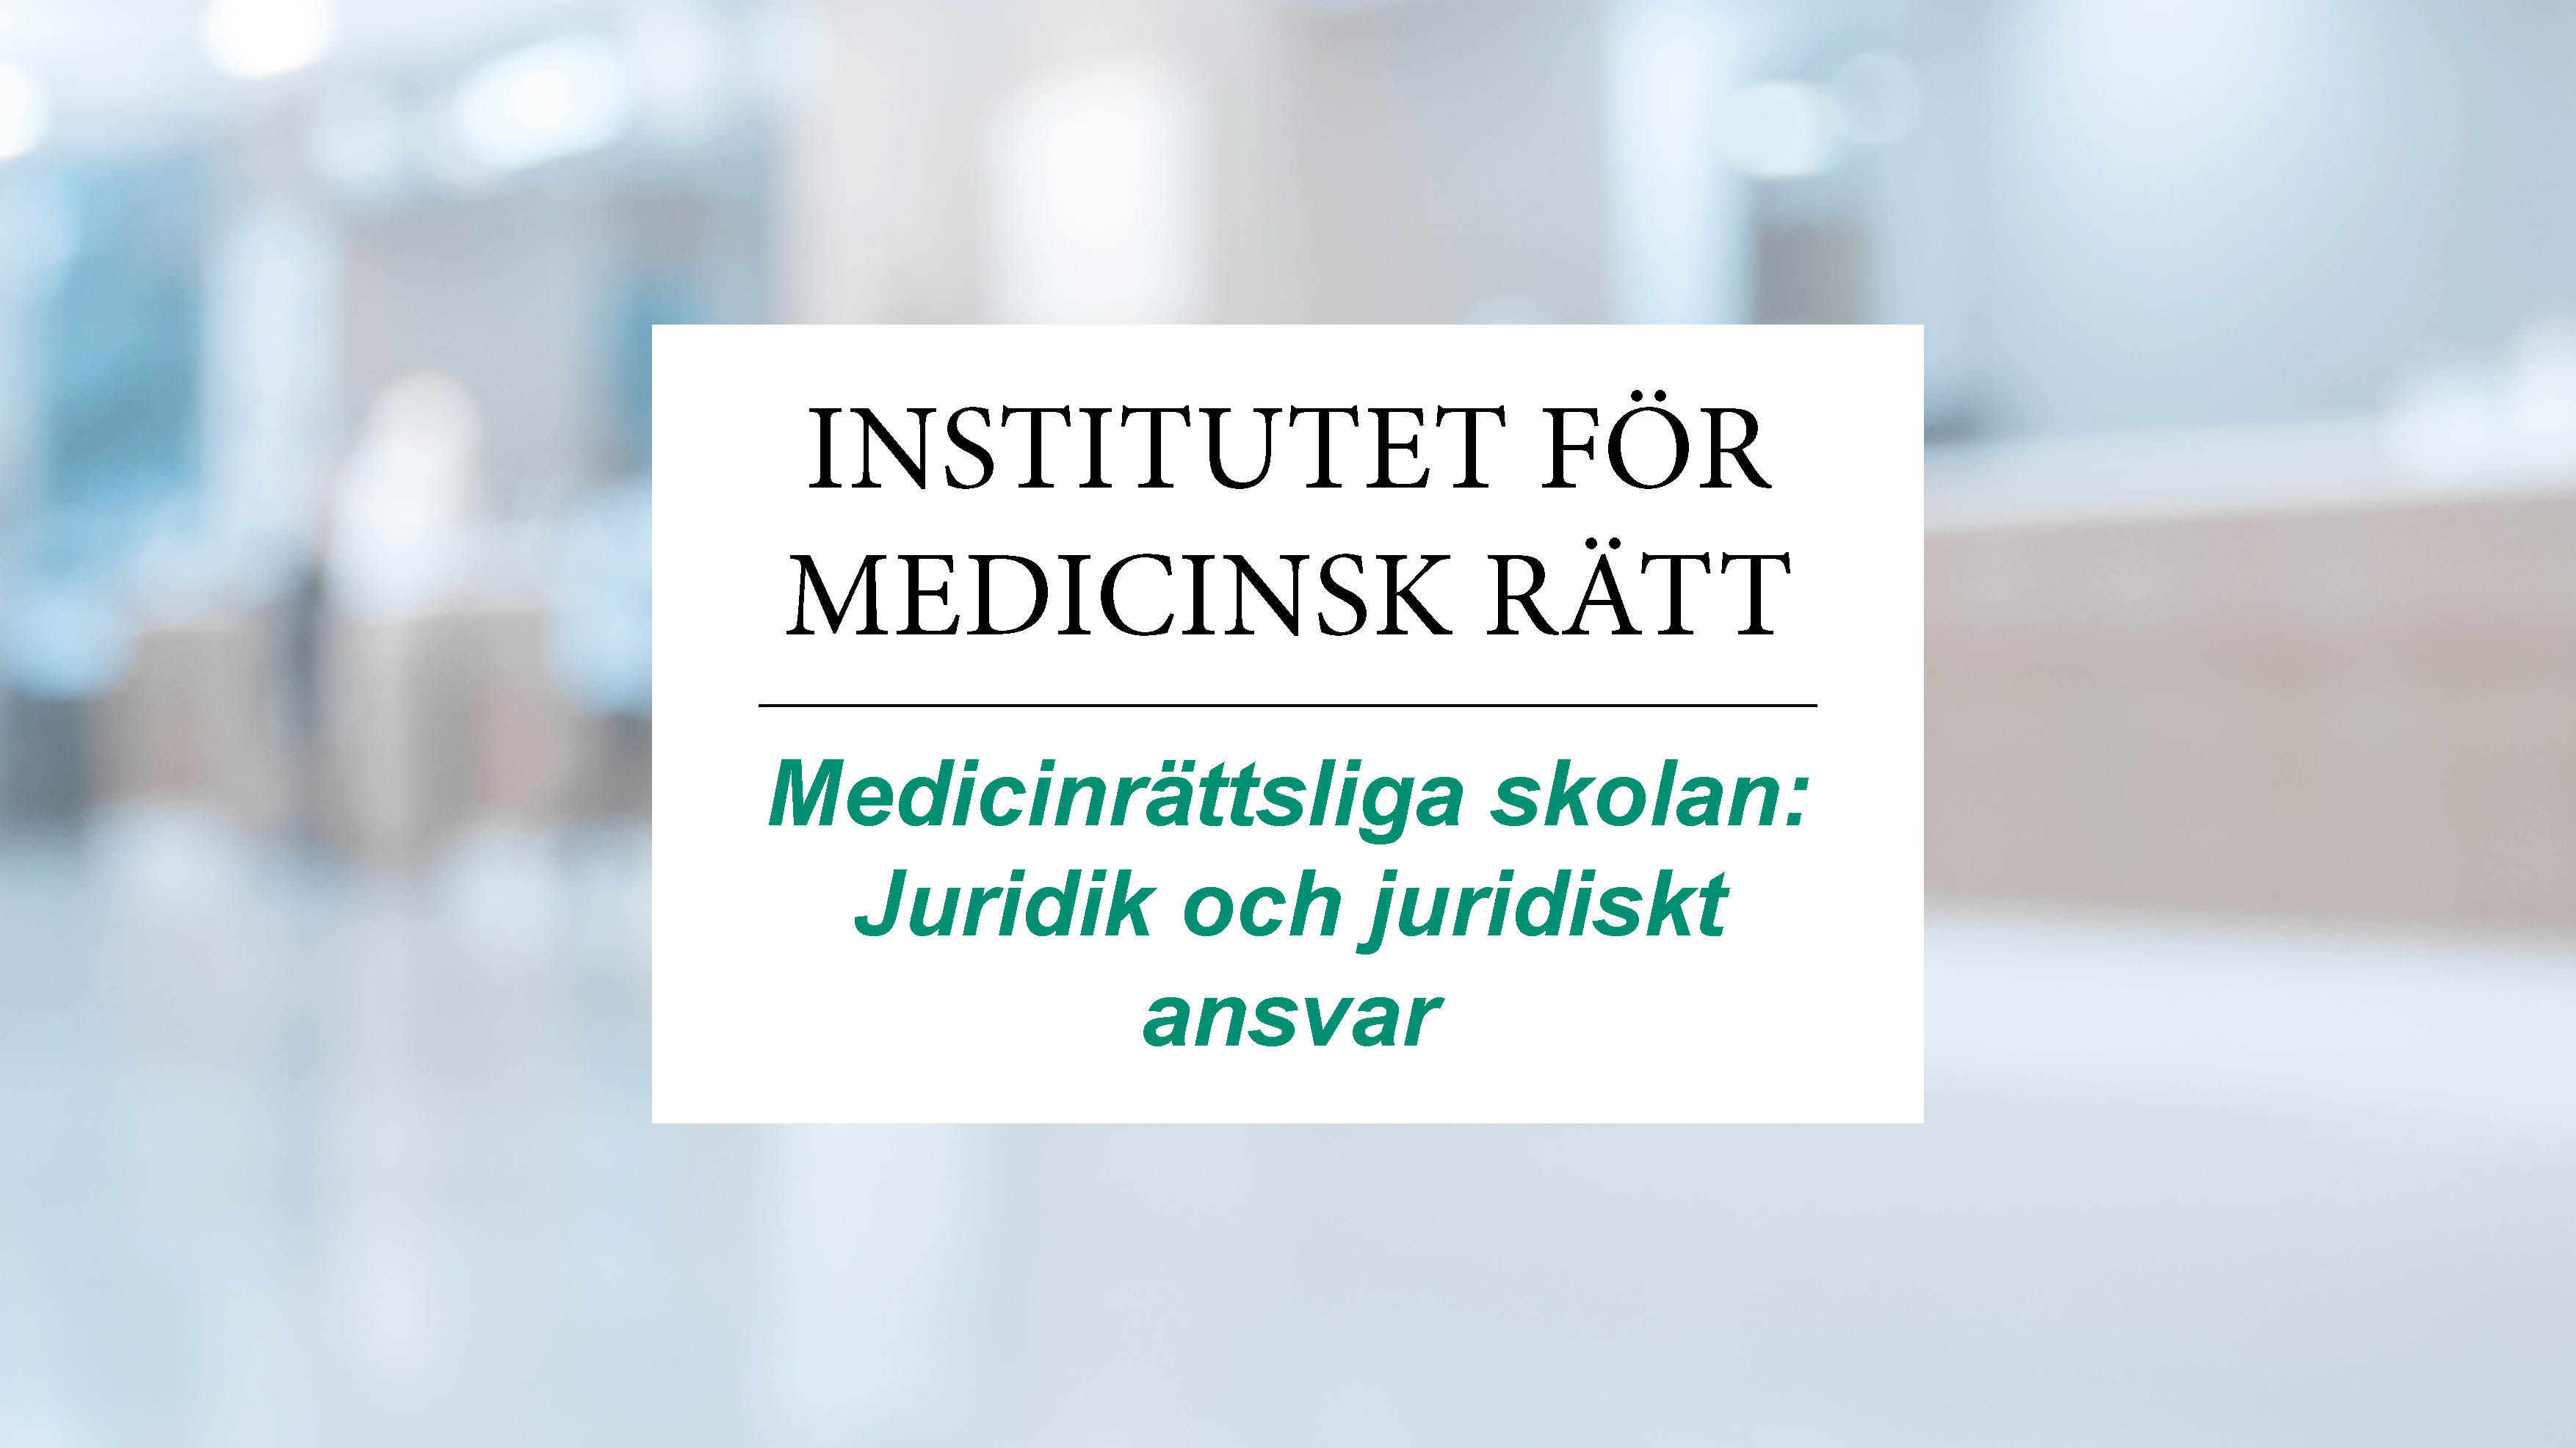 Medicinrättsliga skolan: Juridik och juridiskt ansvar